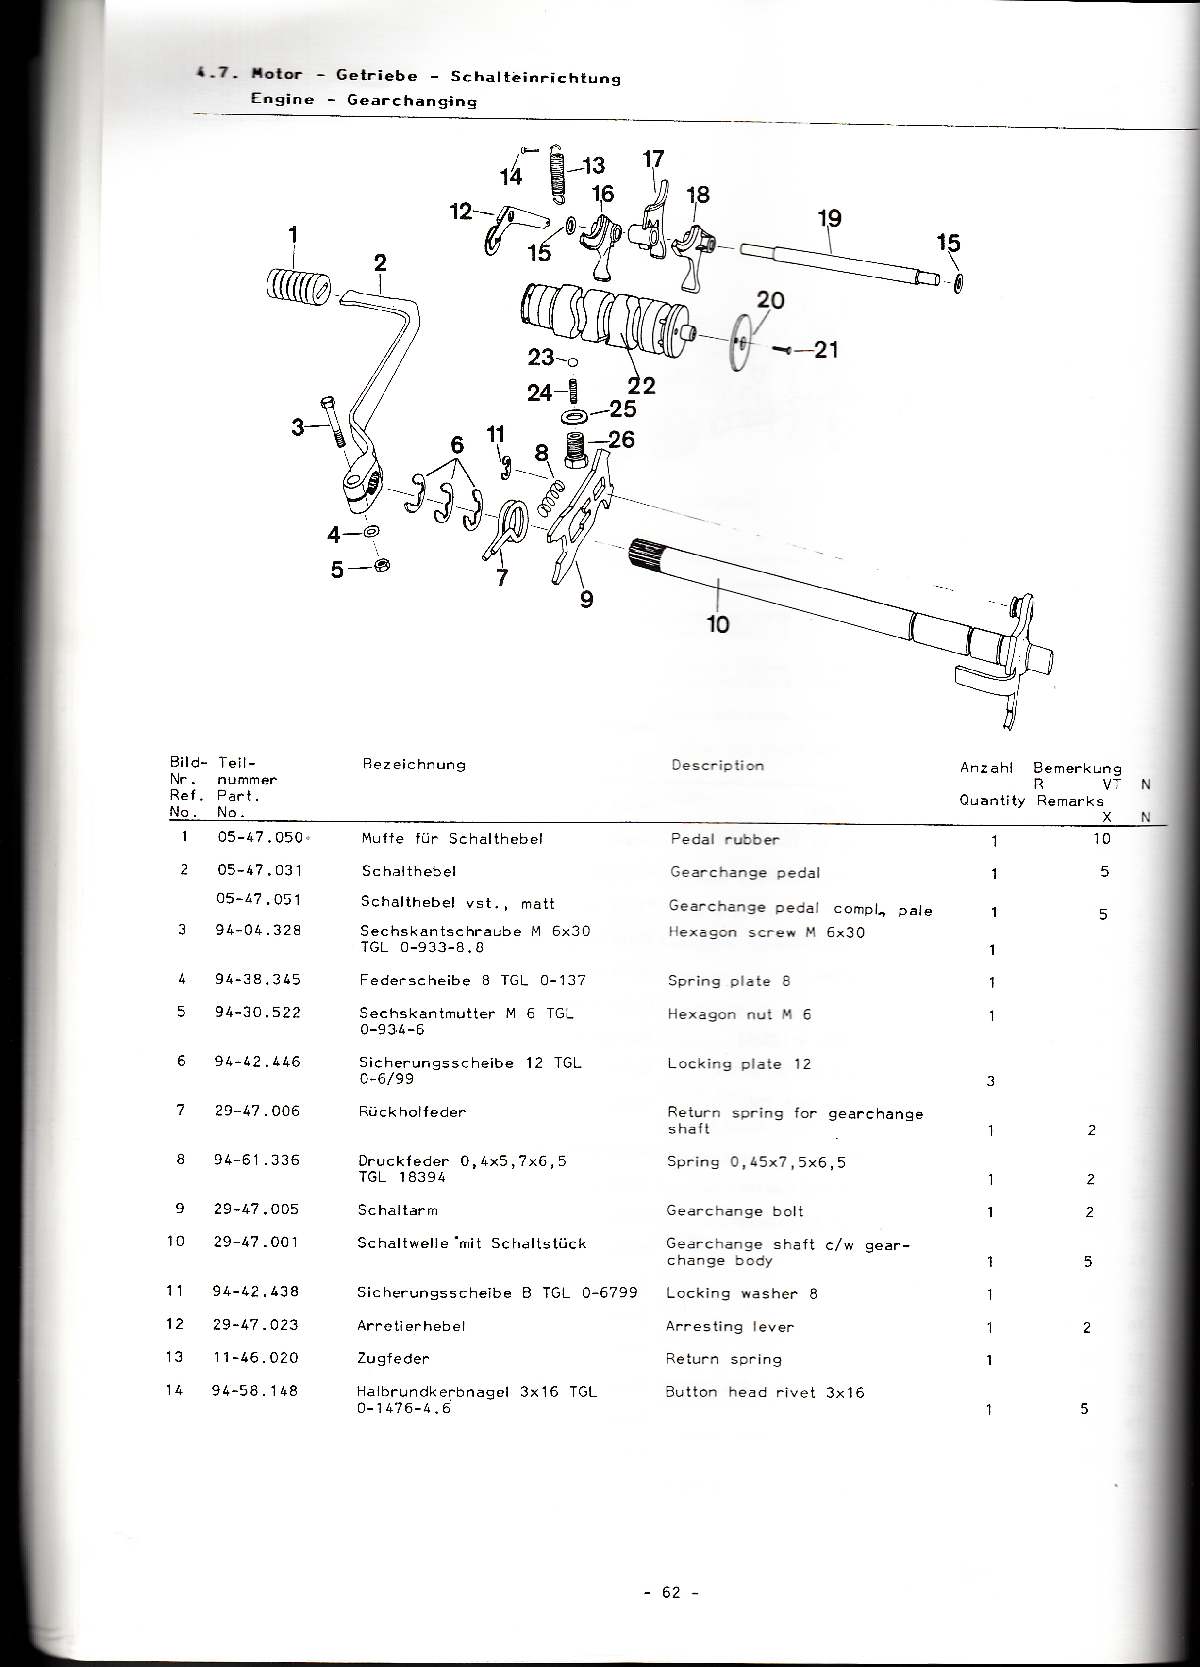 Katalog MZ 251 ETZ - 4.7. Motor - Getriebe - Schalteinrichtung 